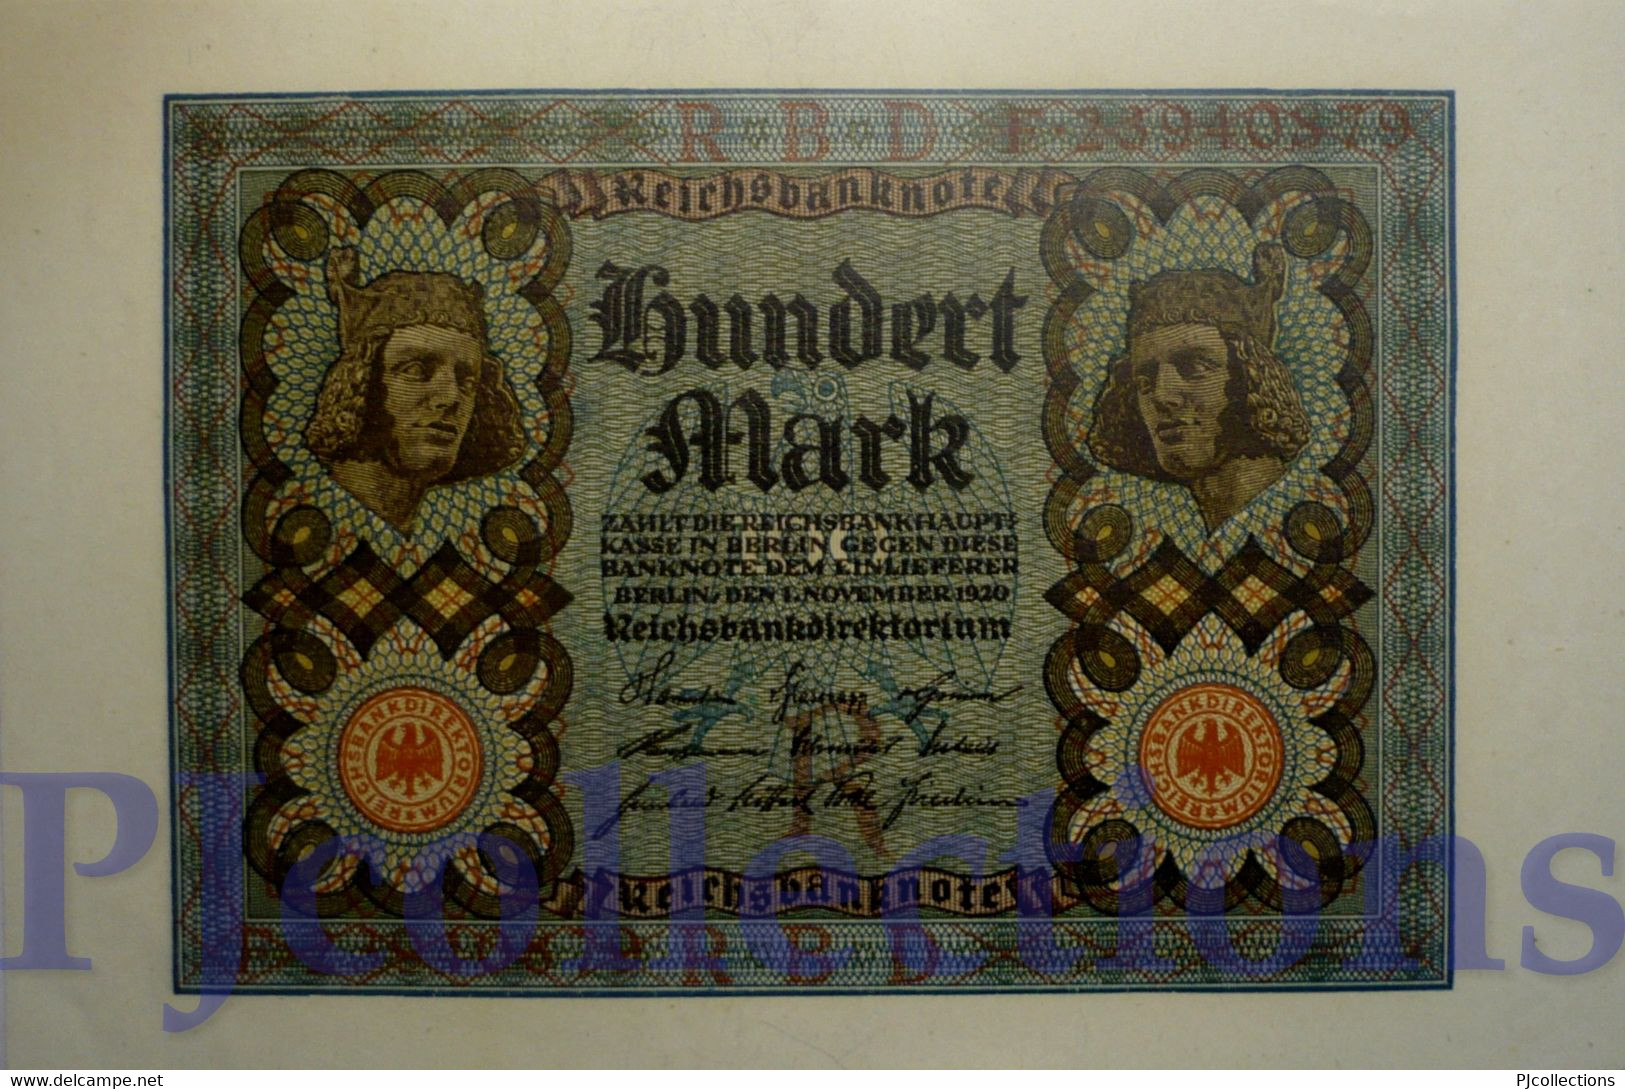 GERMANY 100 MARK 1920 PICK 69b AUNC - Reichsschuldenverwaltung